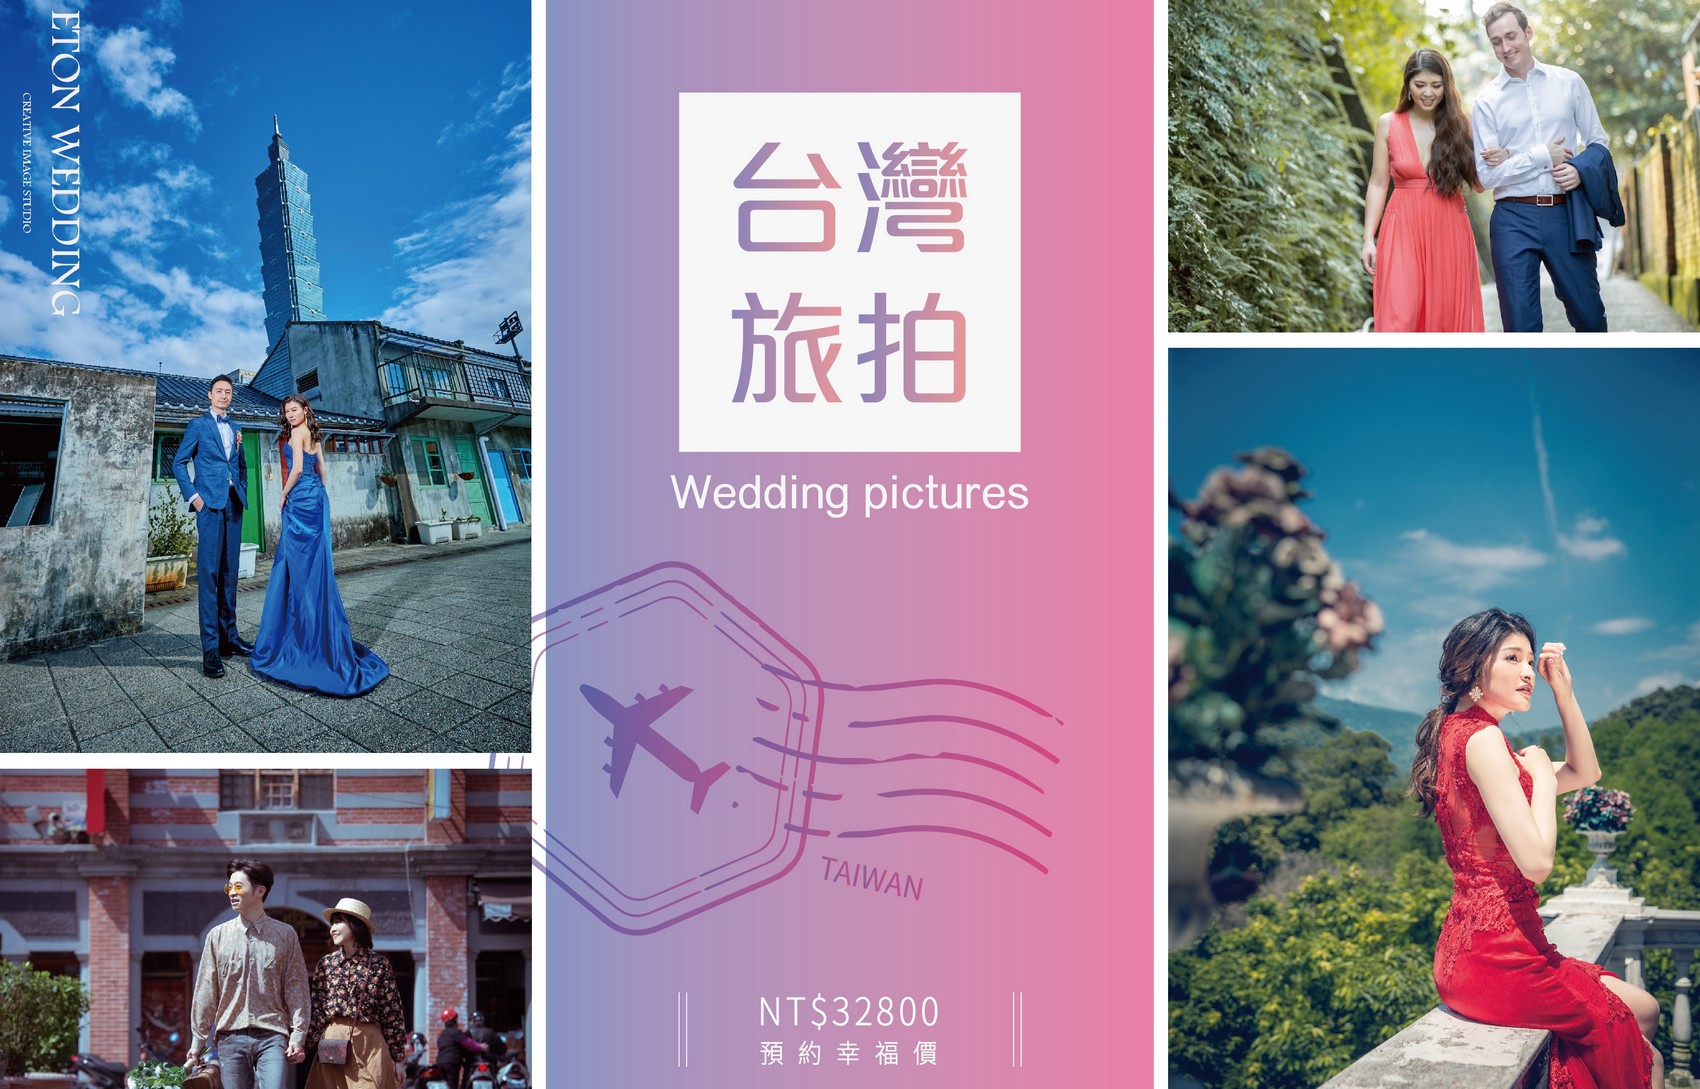 台灣 婚紗工作室,台灣 婚紗攝影價格,嘉義拍婚紗,嘉義 婚紗攝影,嘉義 婚紗工作室